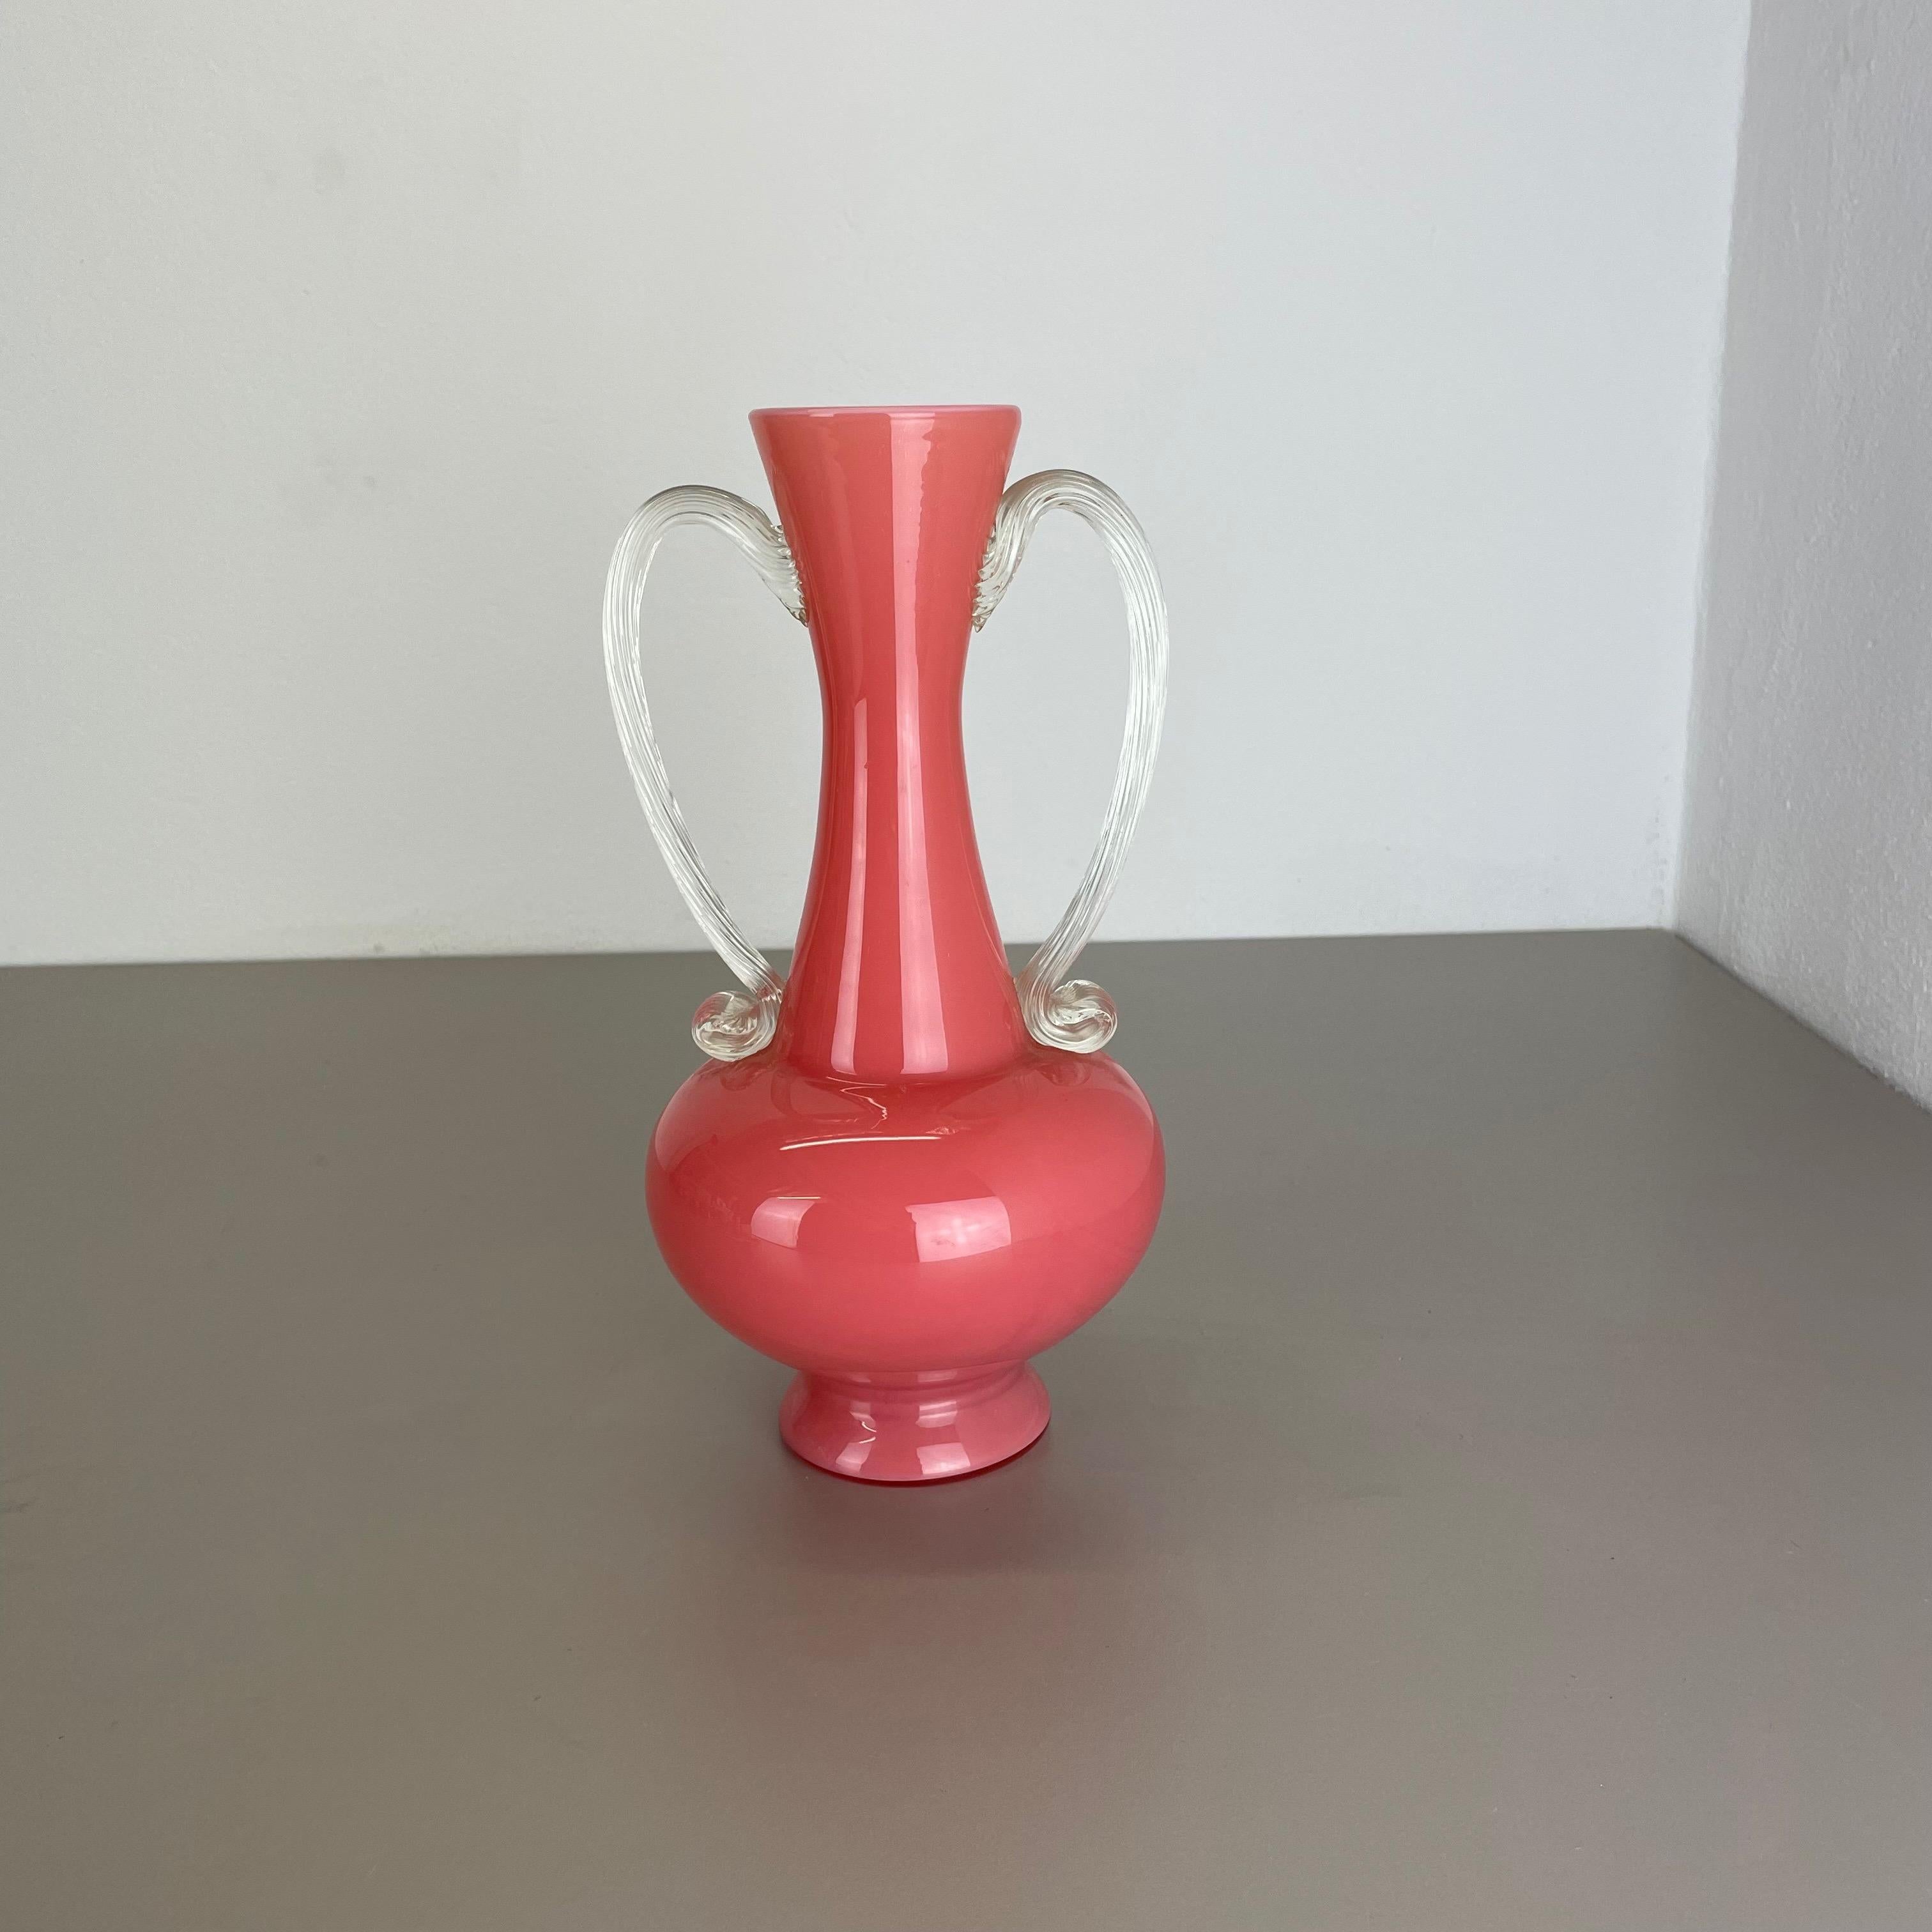 Artikel:

Pop-Art-Vase


Produzent:

Opalin Florenz



Jahrzehnt:

1970s




Original Vintage 1970er Jahre Pop Art mundgeblasen Vase in Italien von Opaline Florenz gemacht. Hergestellt aus hochwertigem italienischem Opalglas.
Schöne 1970er Pop Art